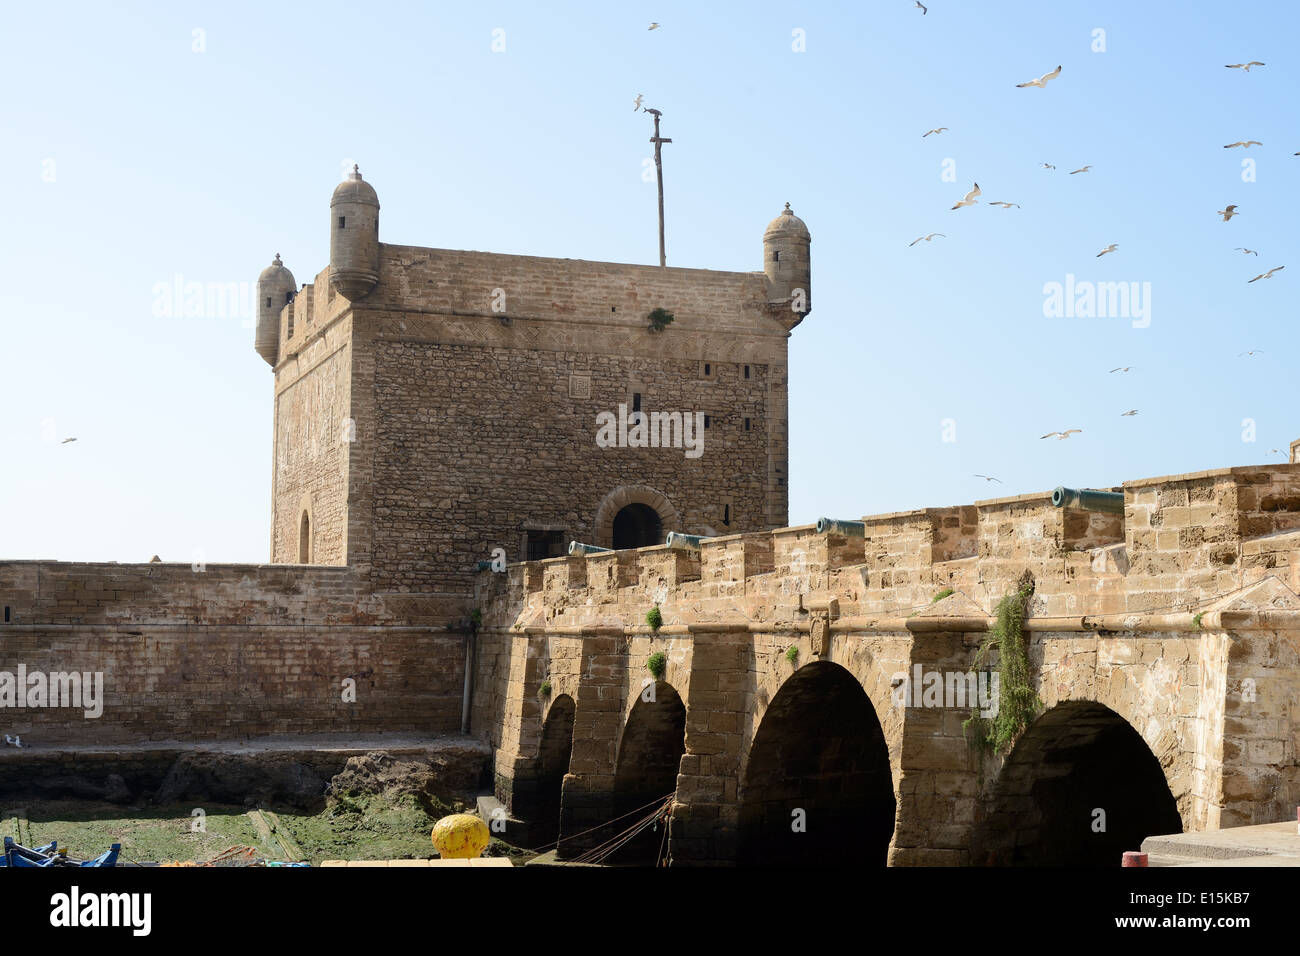 Le fortificazioni che mostra la torre e canonici a Essaouira in Marocco Foto Stock